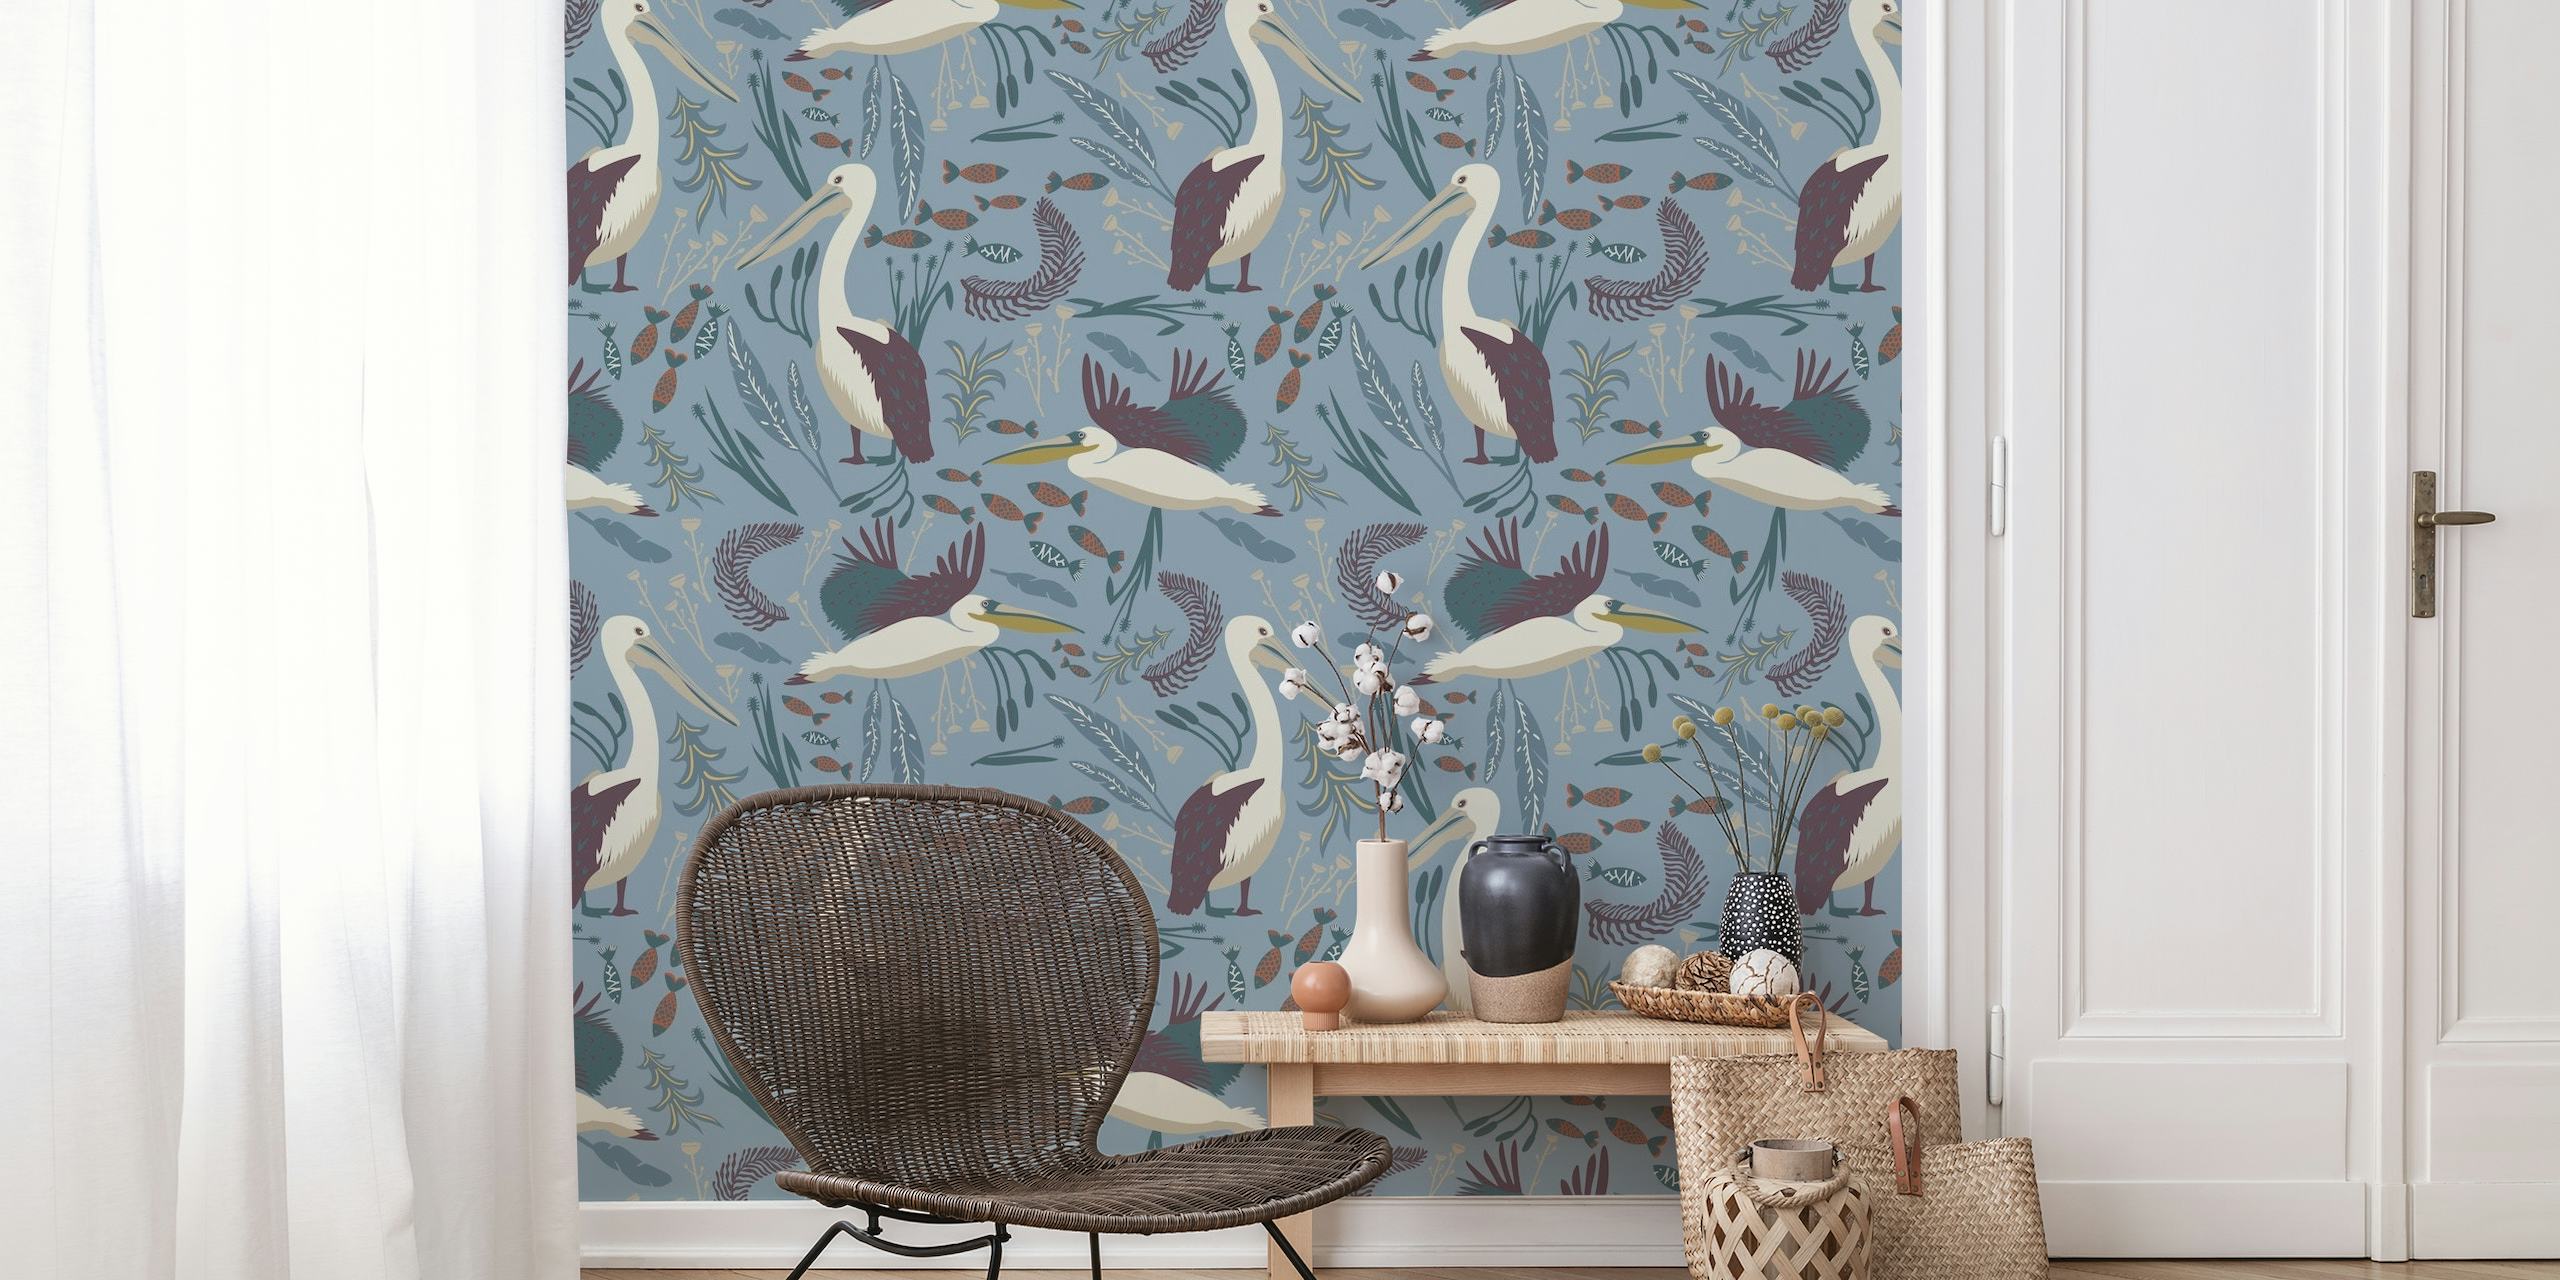 Pelicans in the wilderness wallpaper